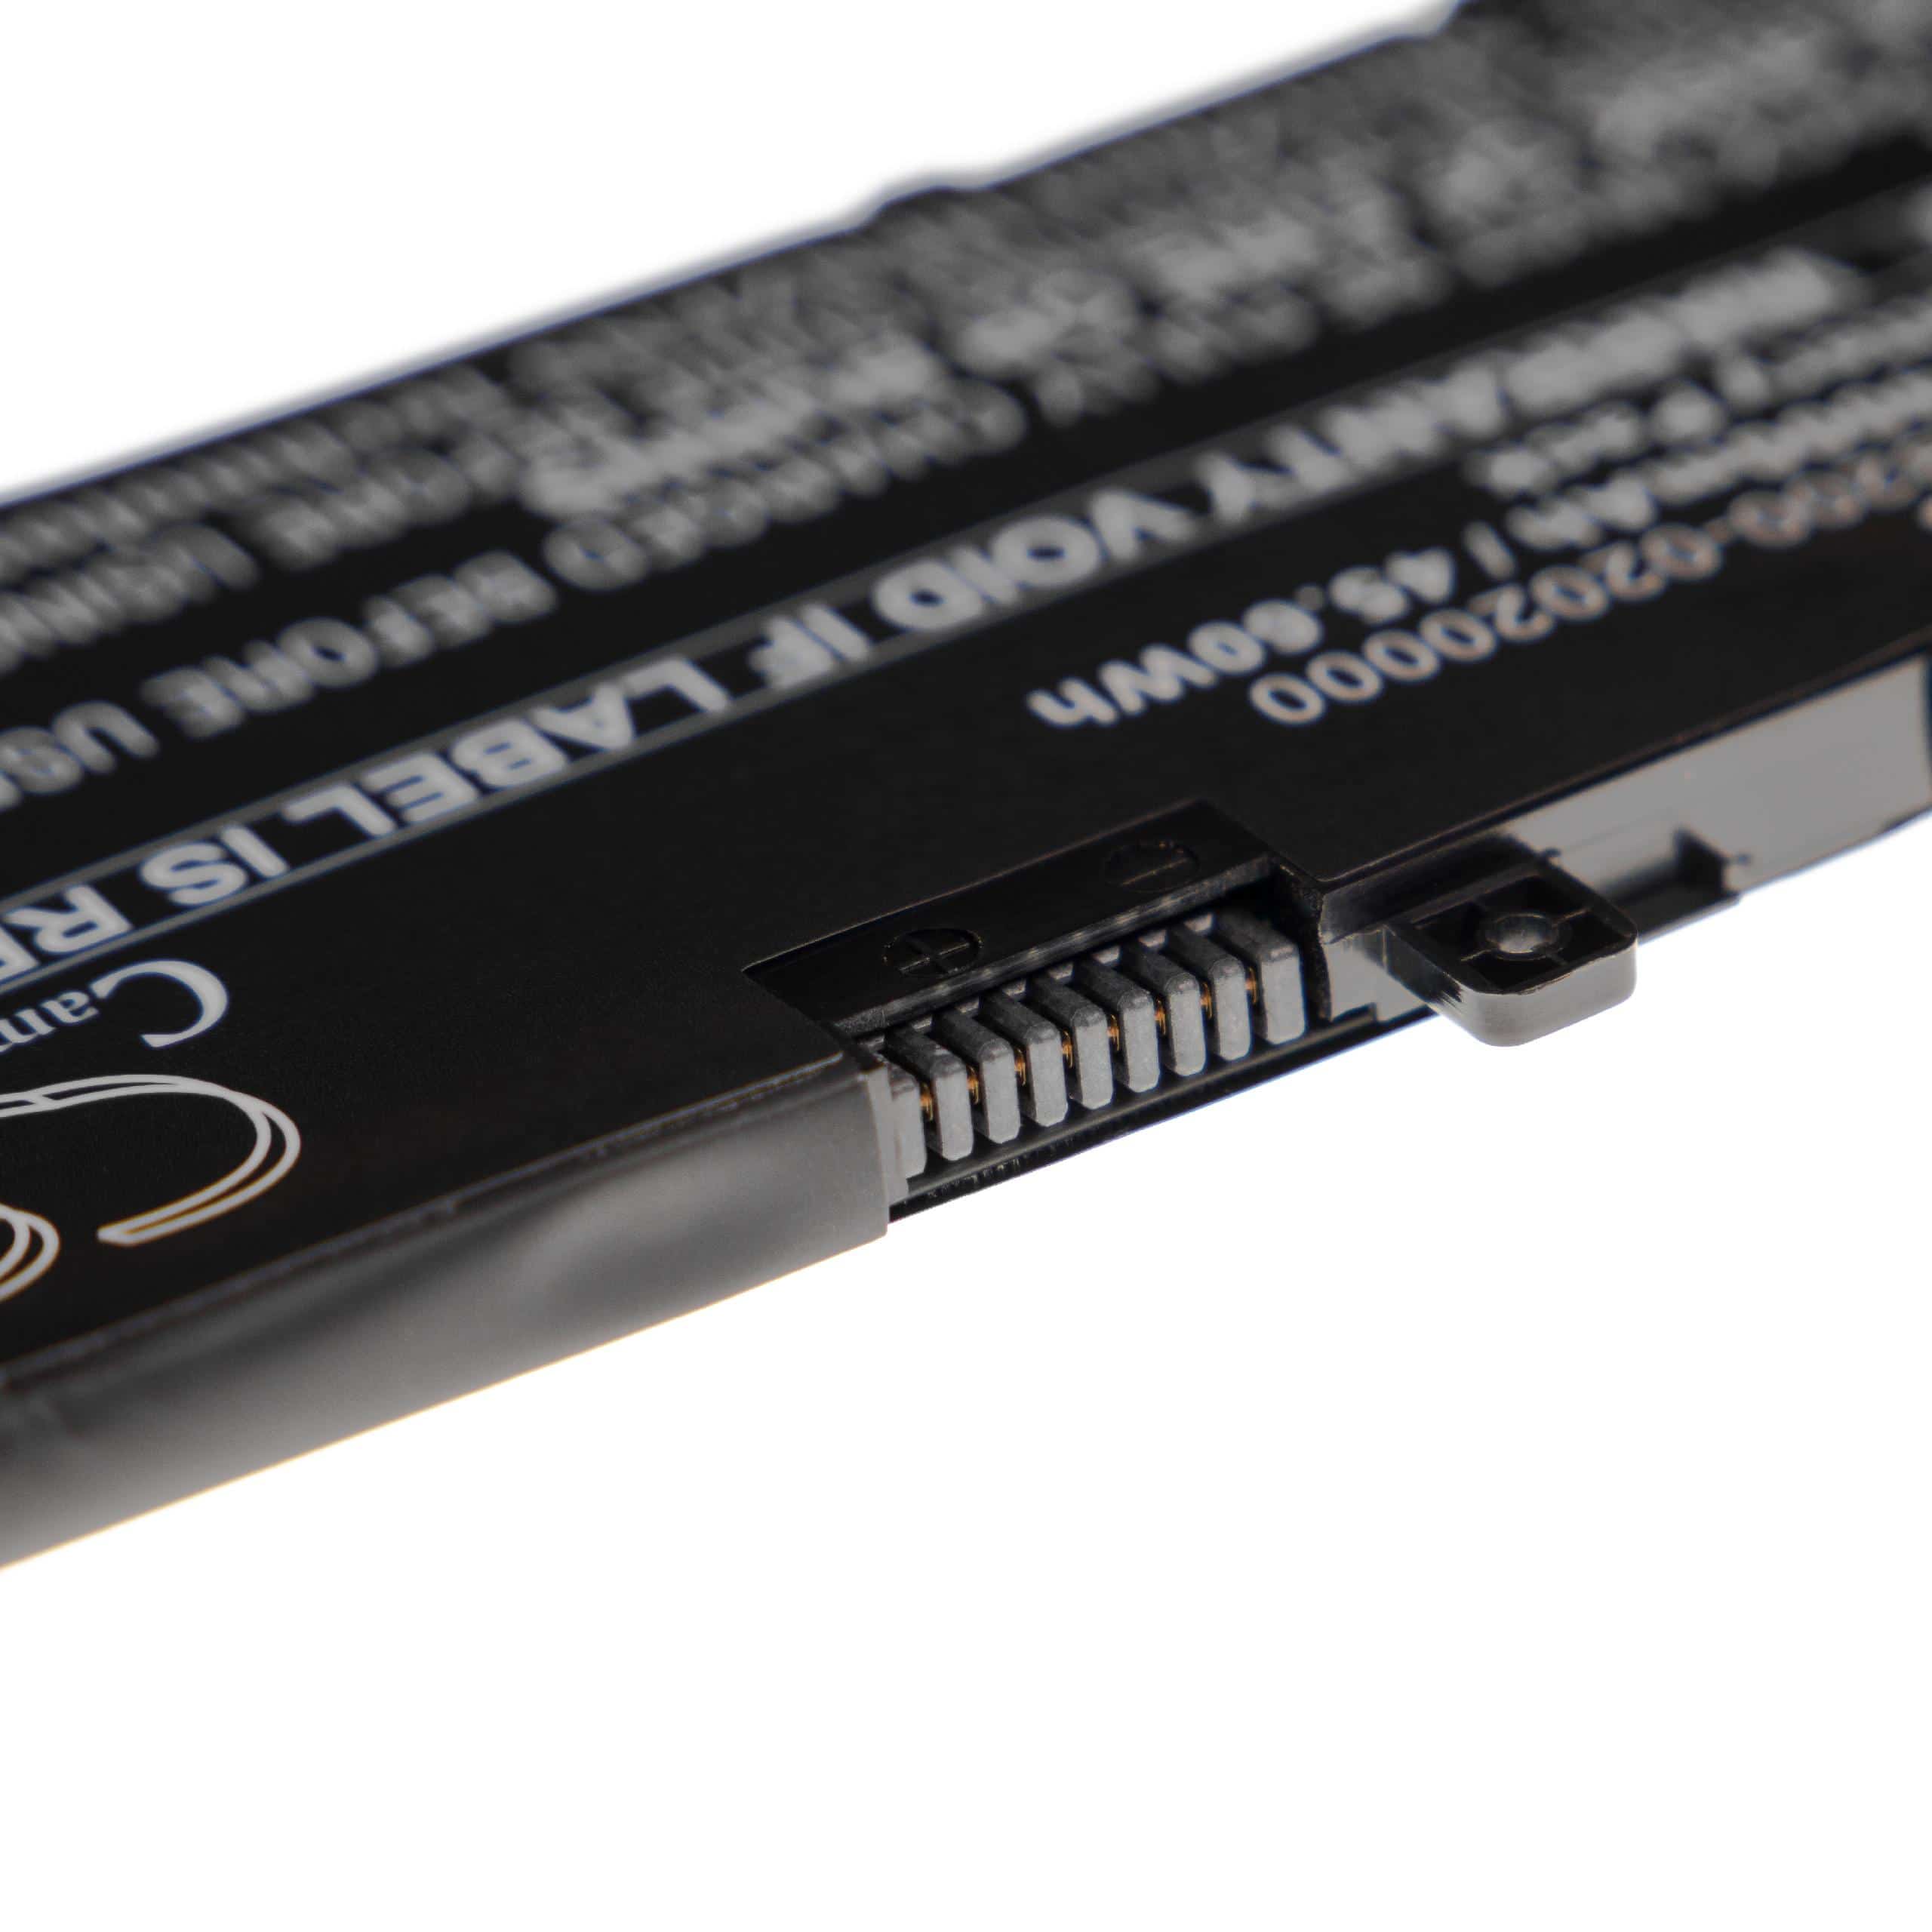 Batterie remplace Asus B31N1535, 0B200-02020000 pour ordinateur portable - 4000mAh 11,4V Li-polymère, noir